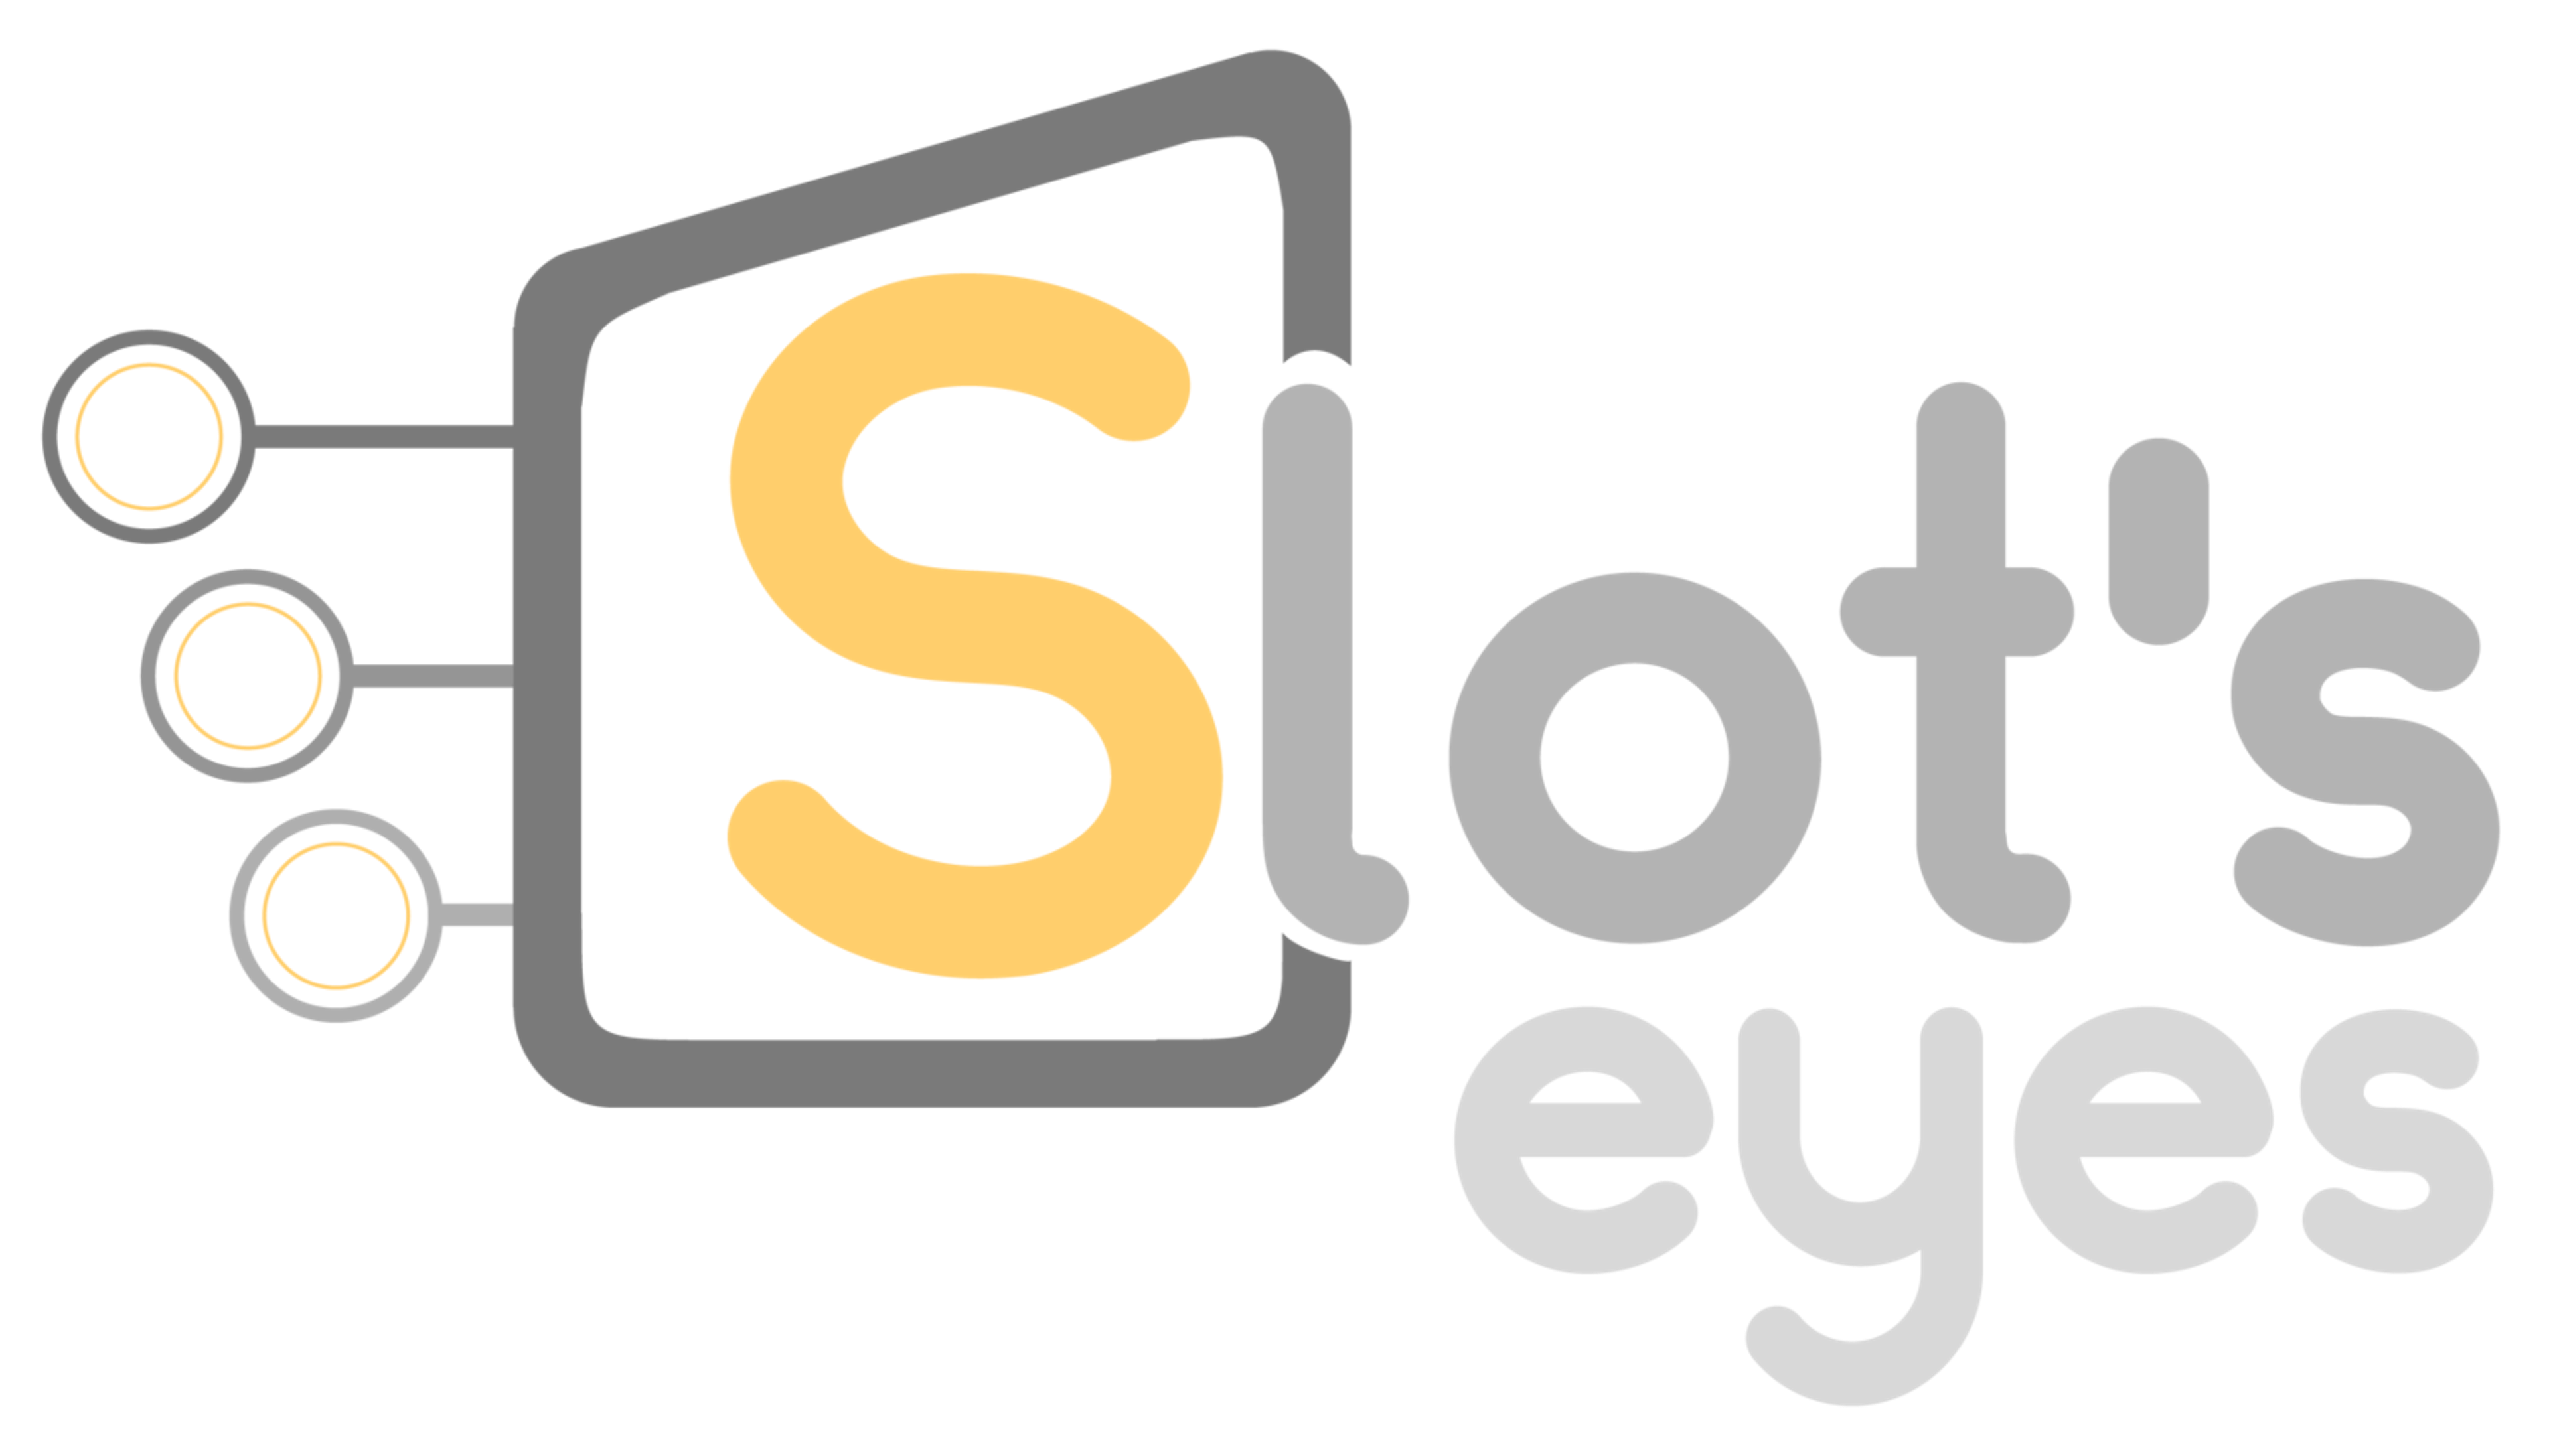 Slot's Eyes Logo